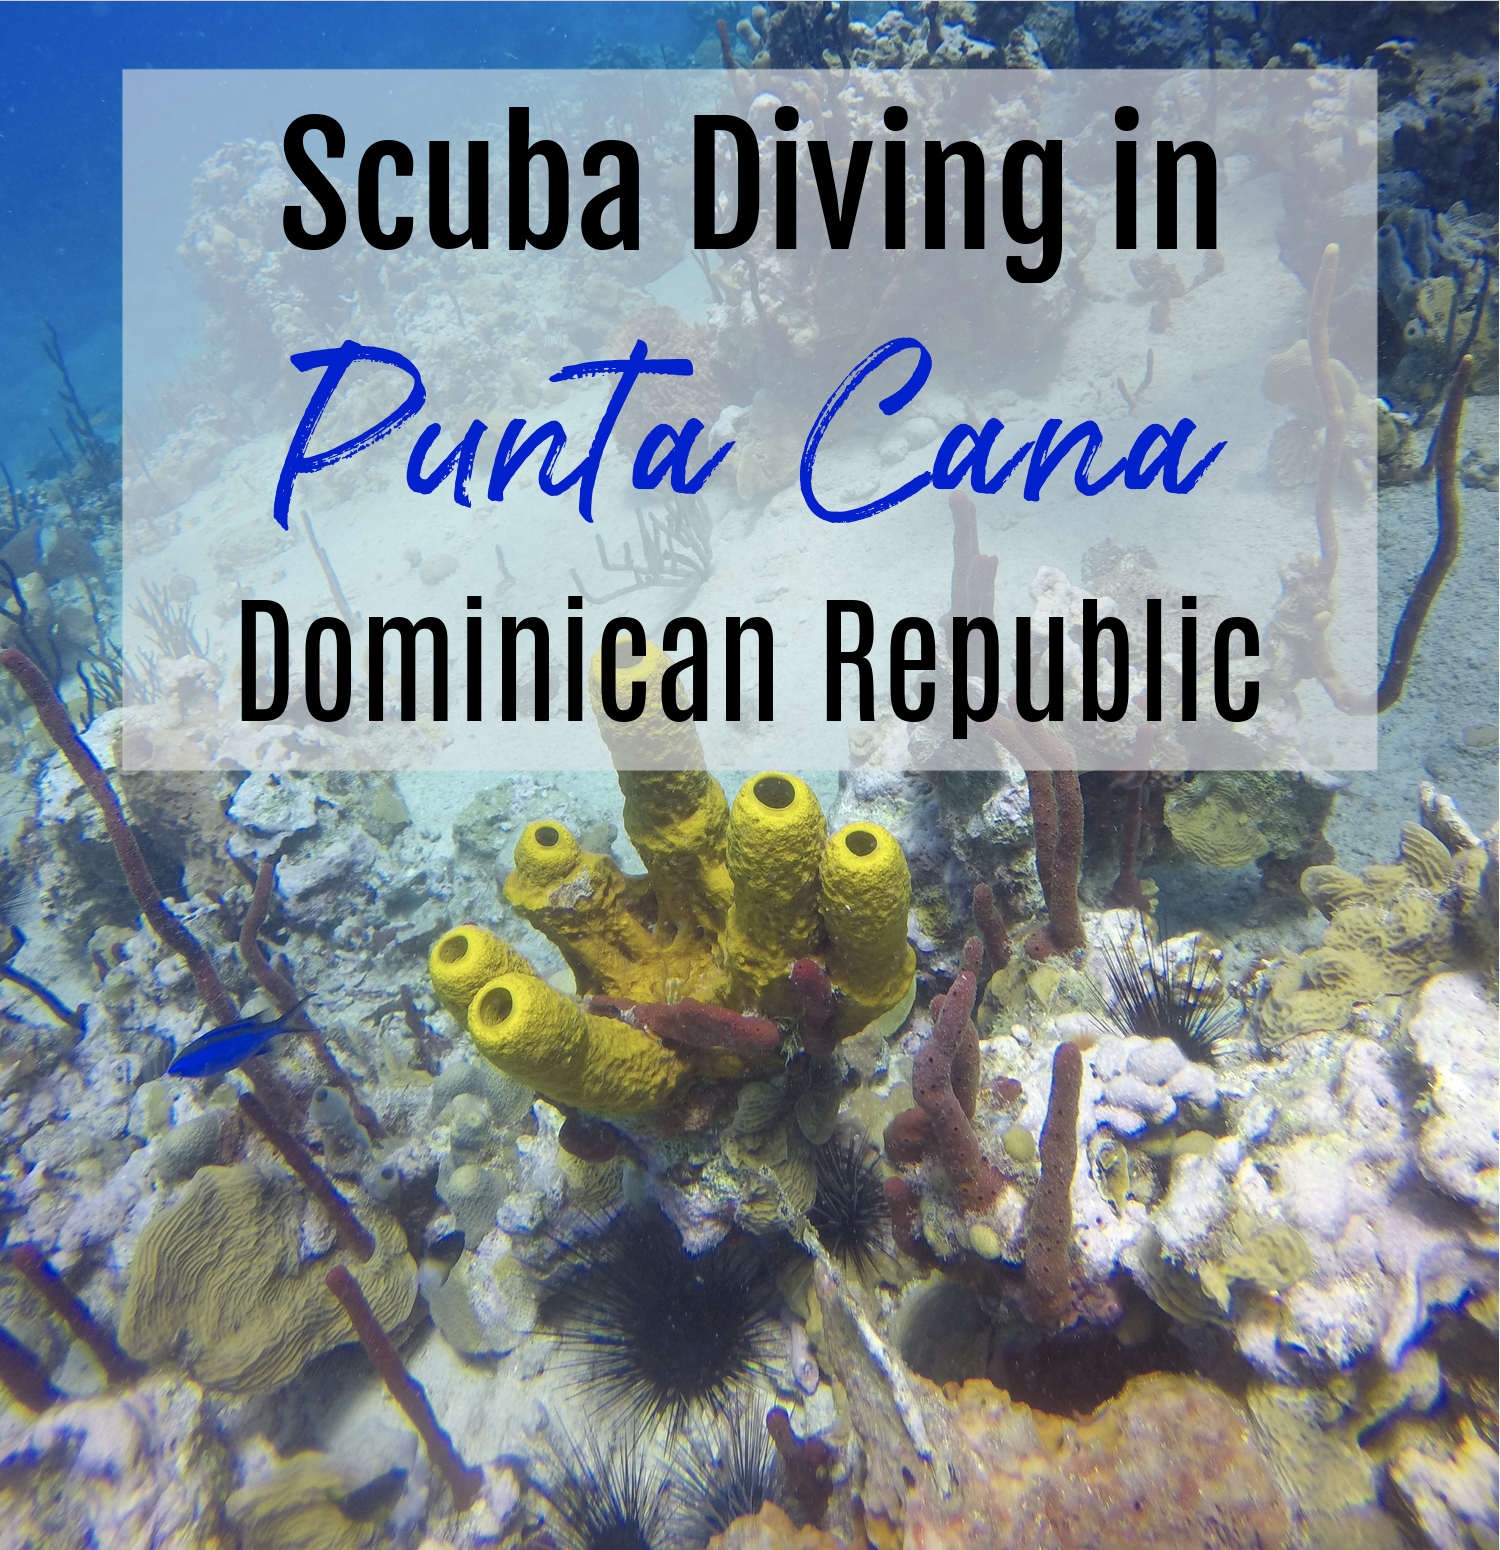 Scuba Diving in Punta Cana Dominican Republic